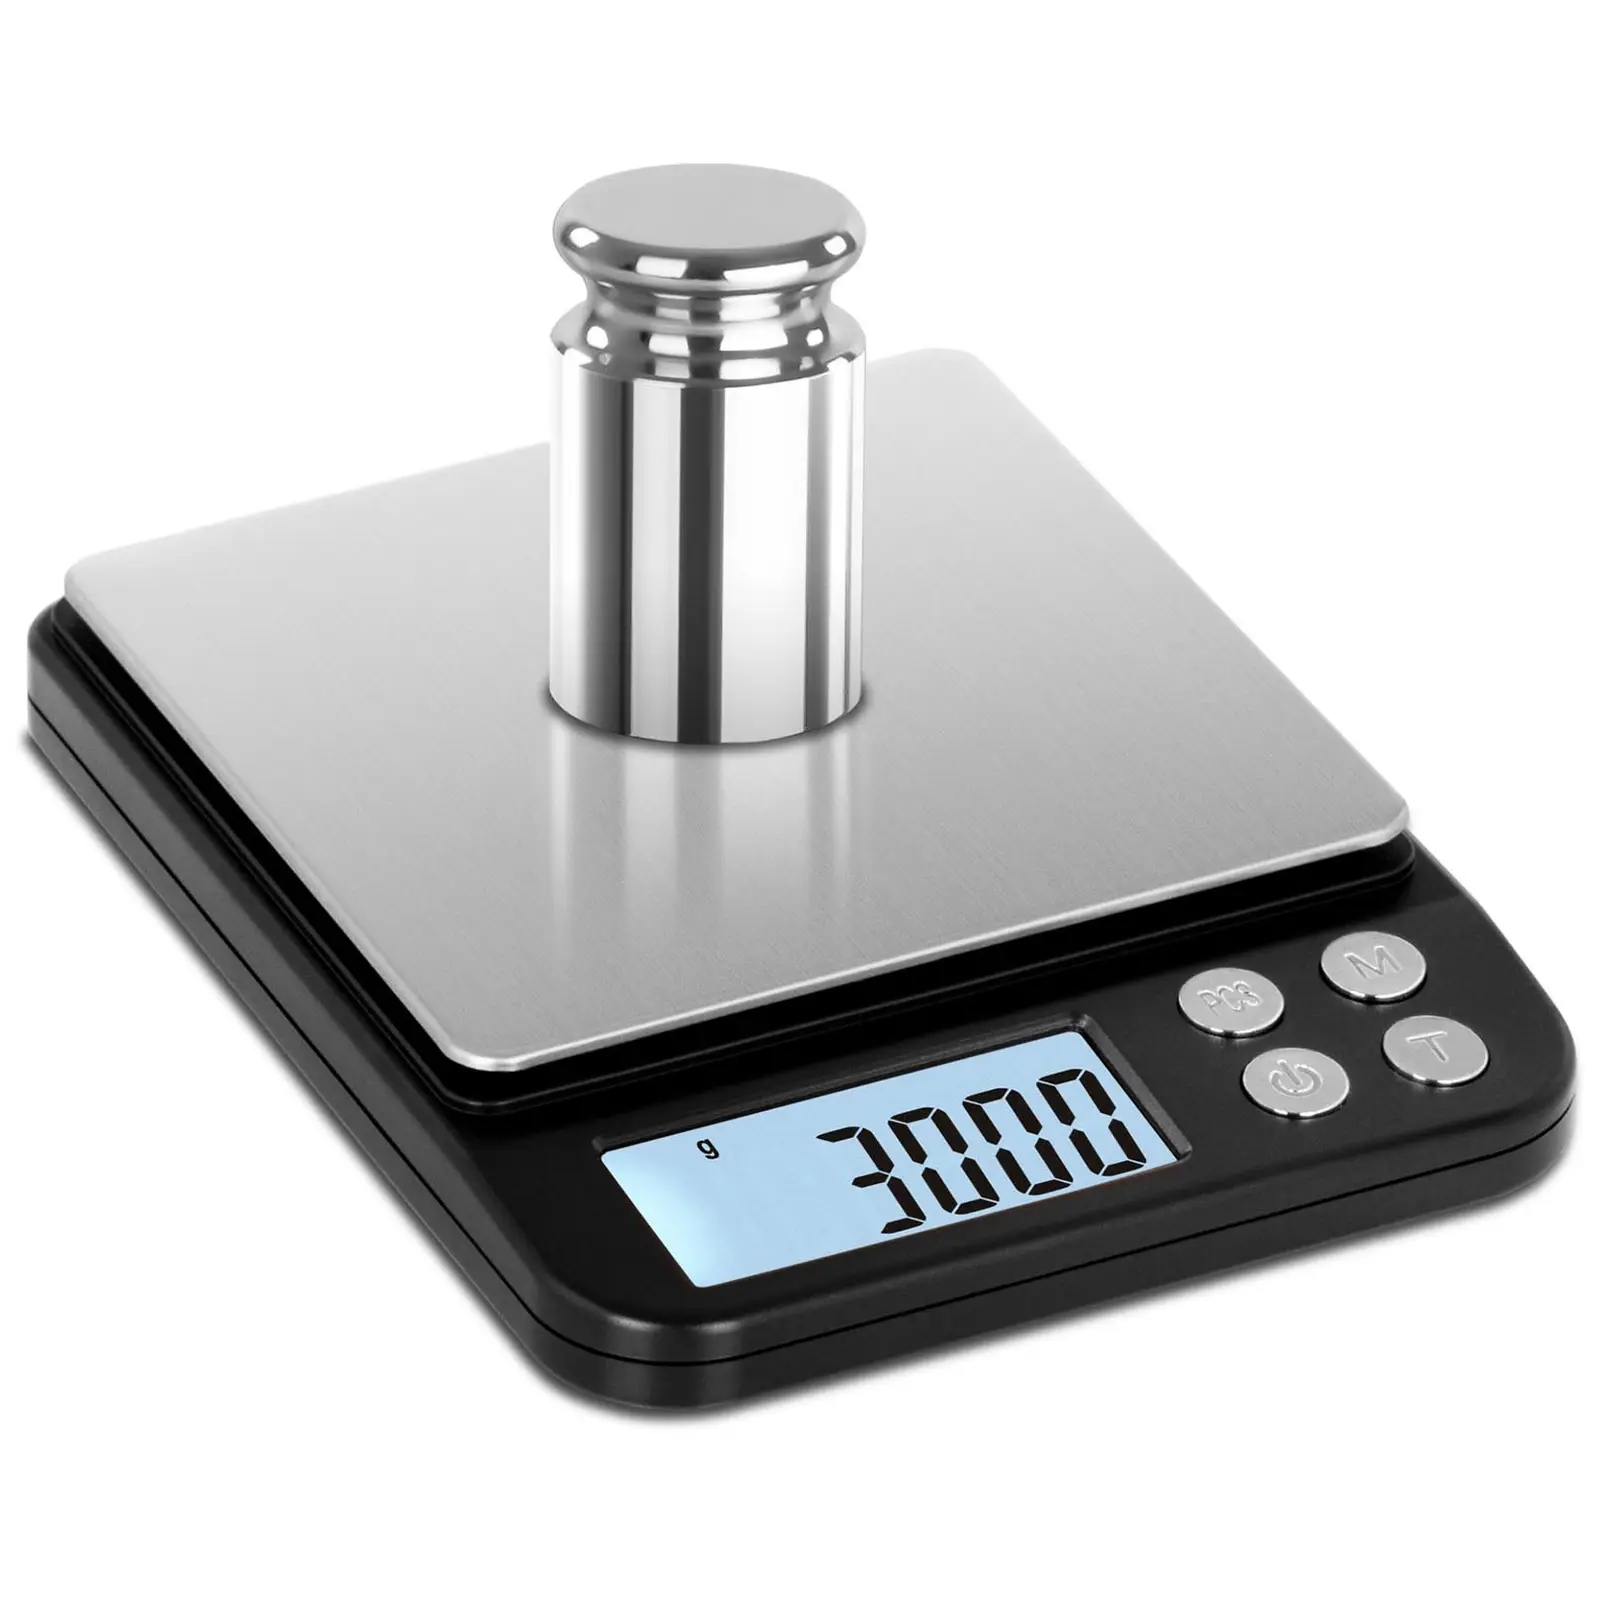 Digital bordsvåg - 3 kg / 1 g